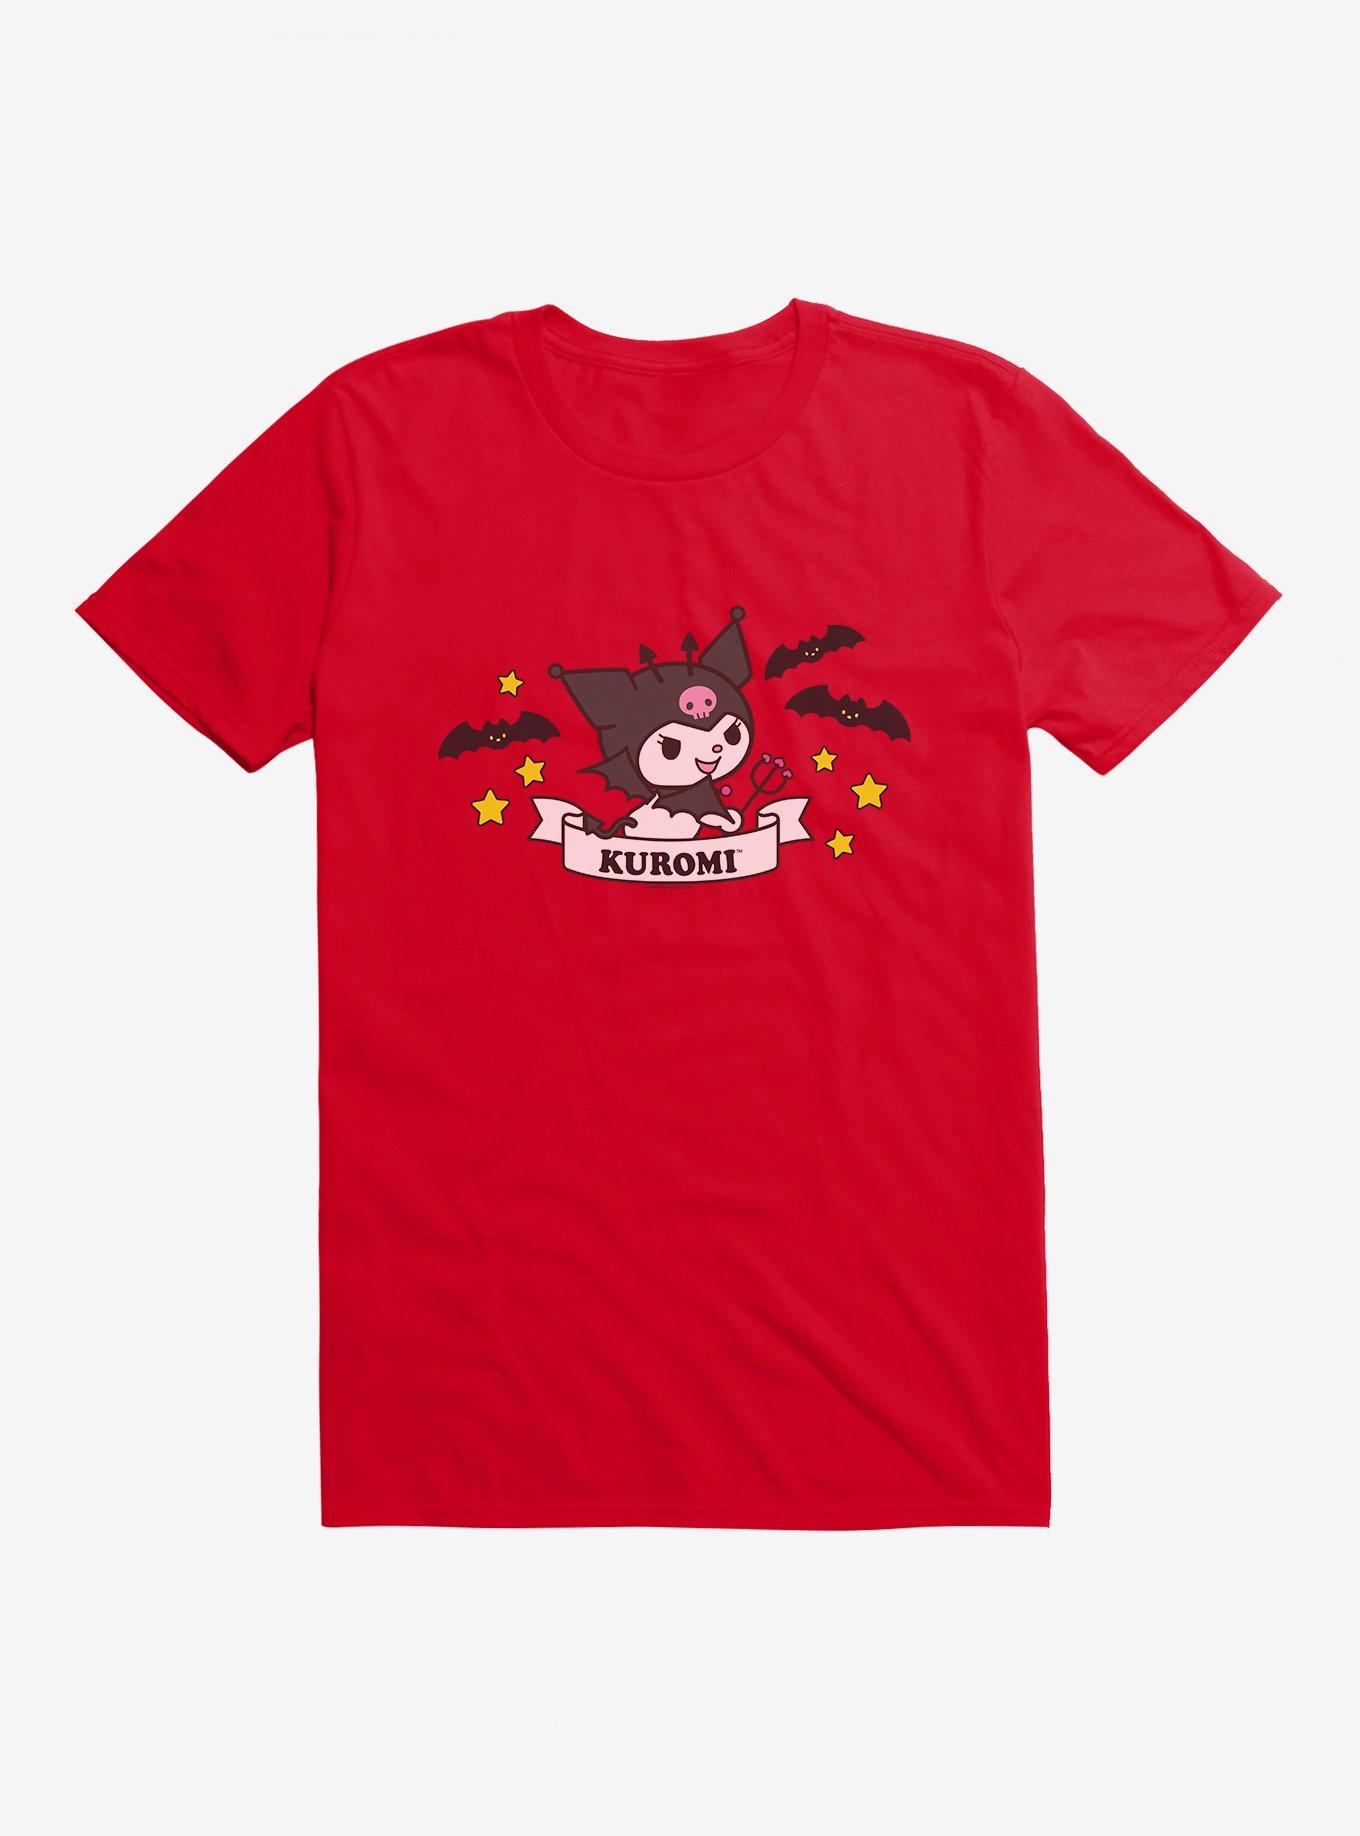 Kuromi Halloween Stars and Bats T-Shirt, RED, hi-res